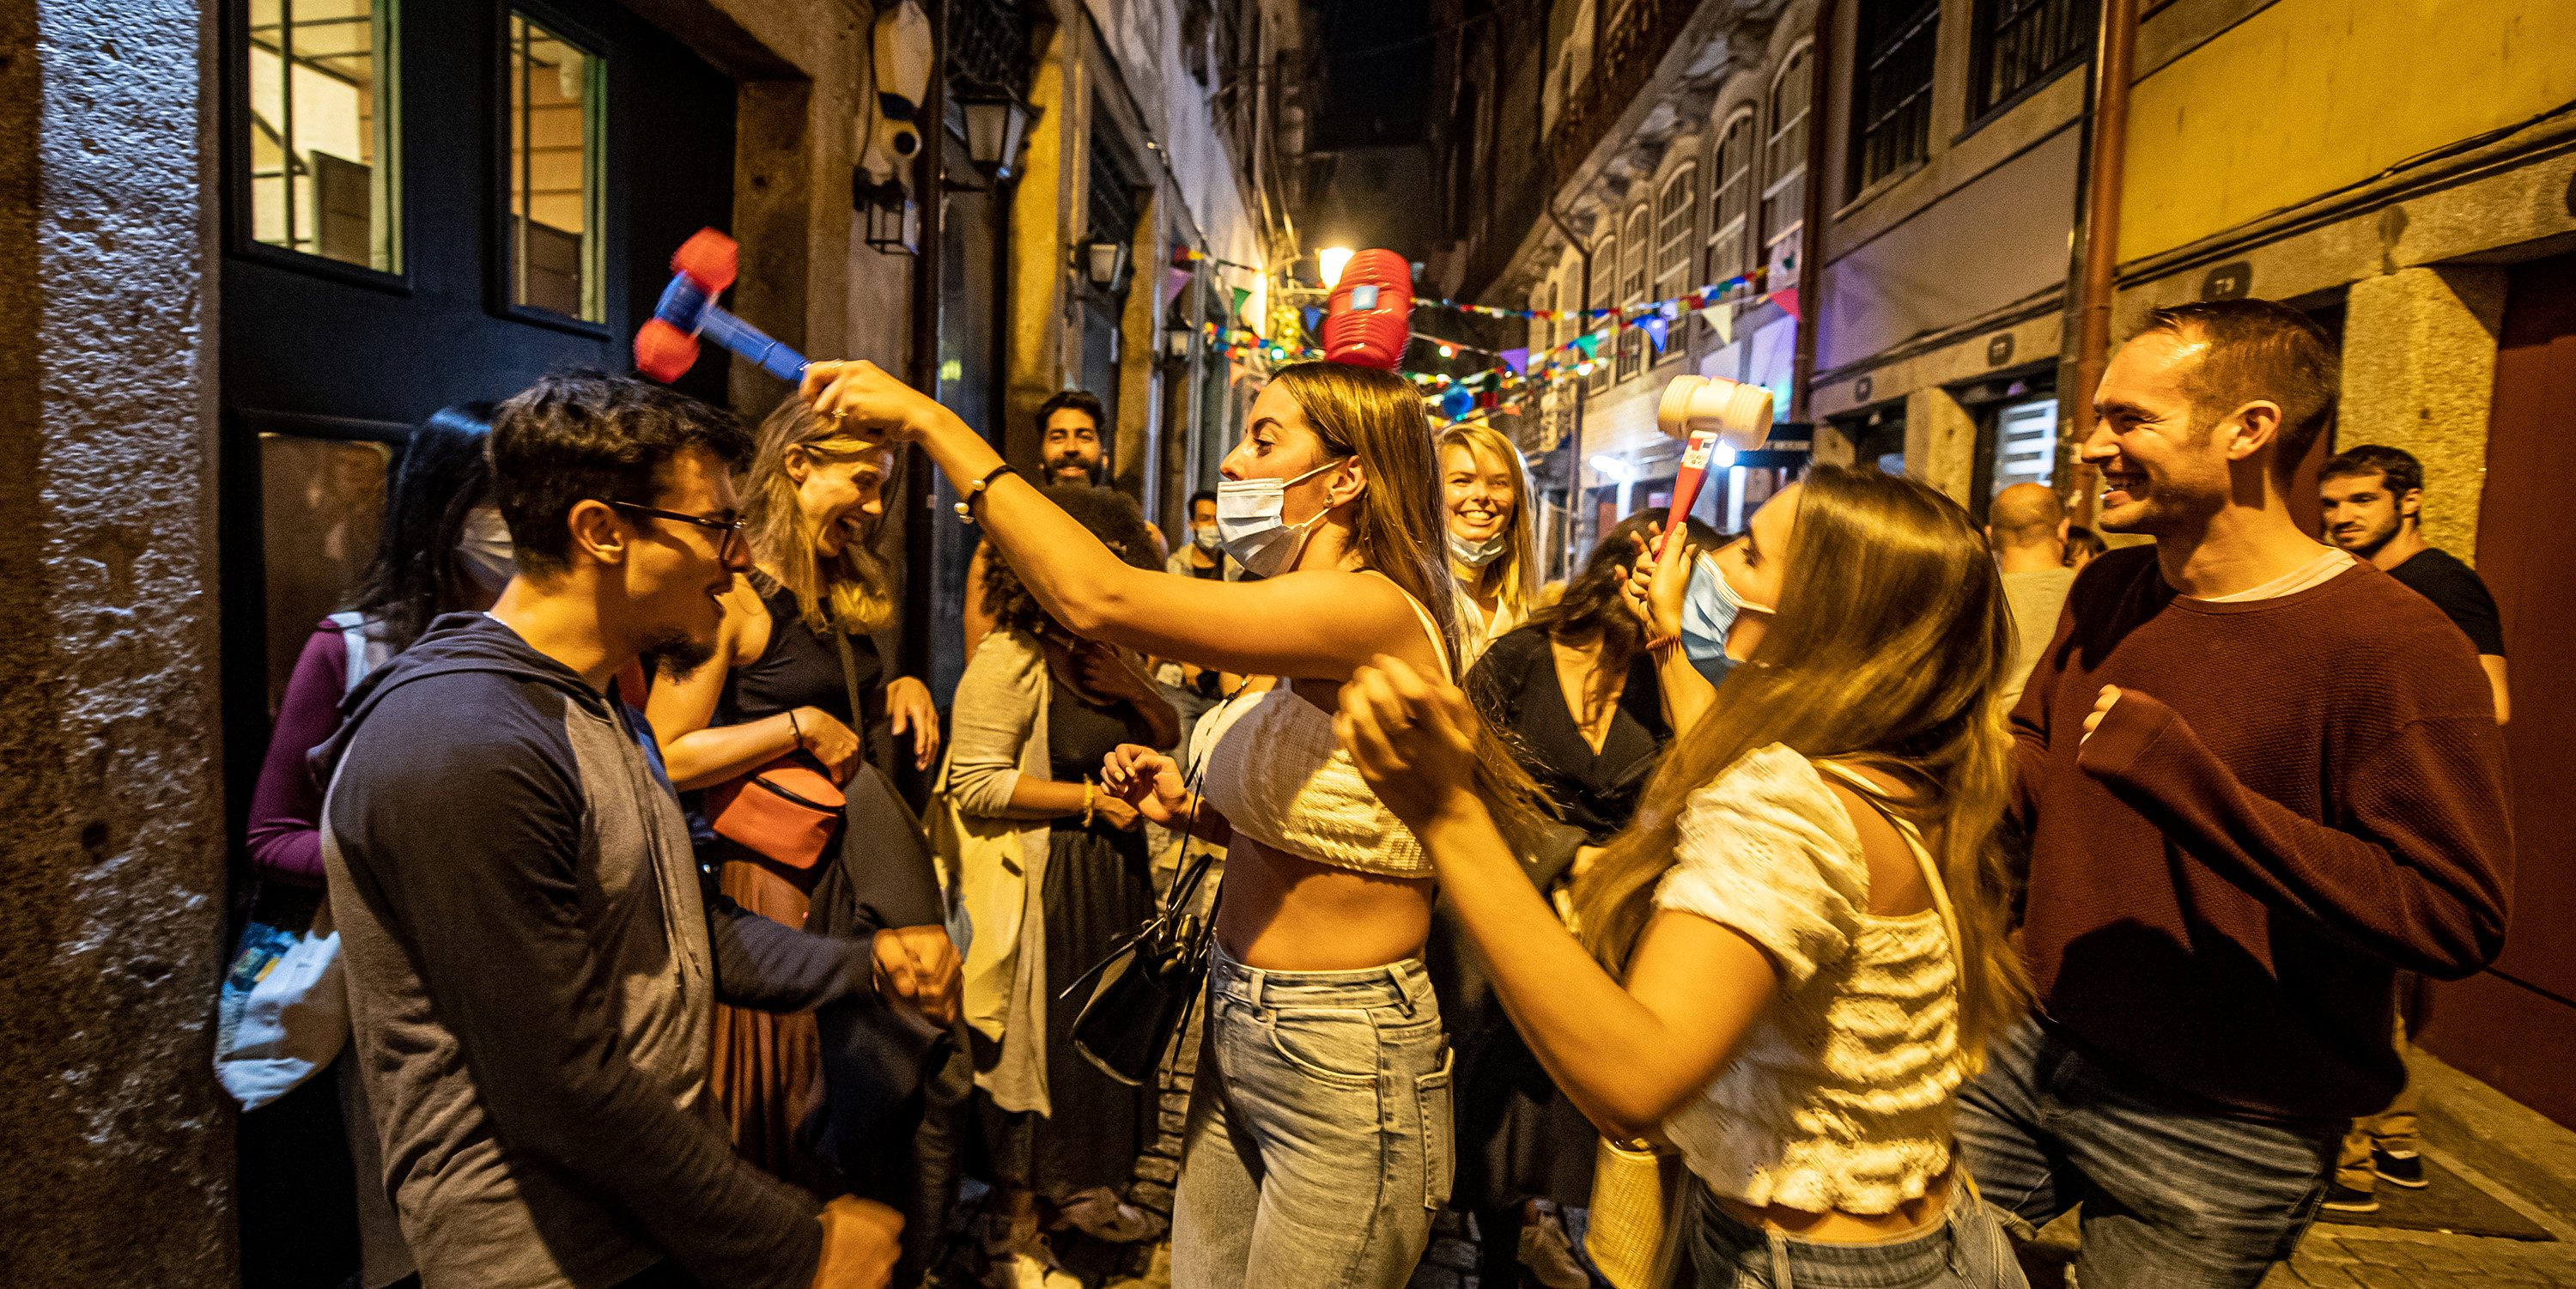 Apesar da noite quente e da conquista da seleção portuguesa no futebol, o Porto saiu à rua para festejar o S. João, mas longe das multidões habituais